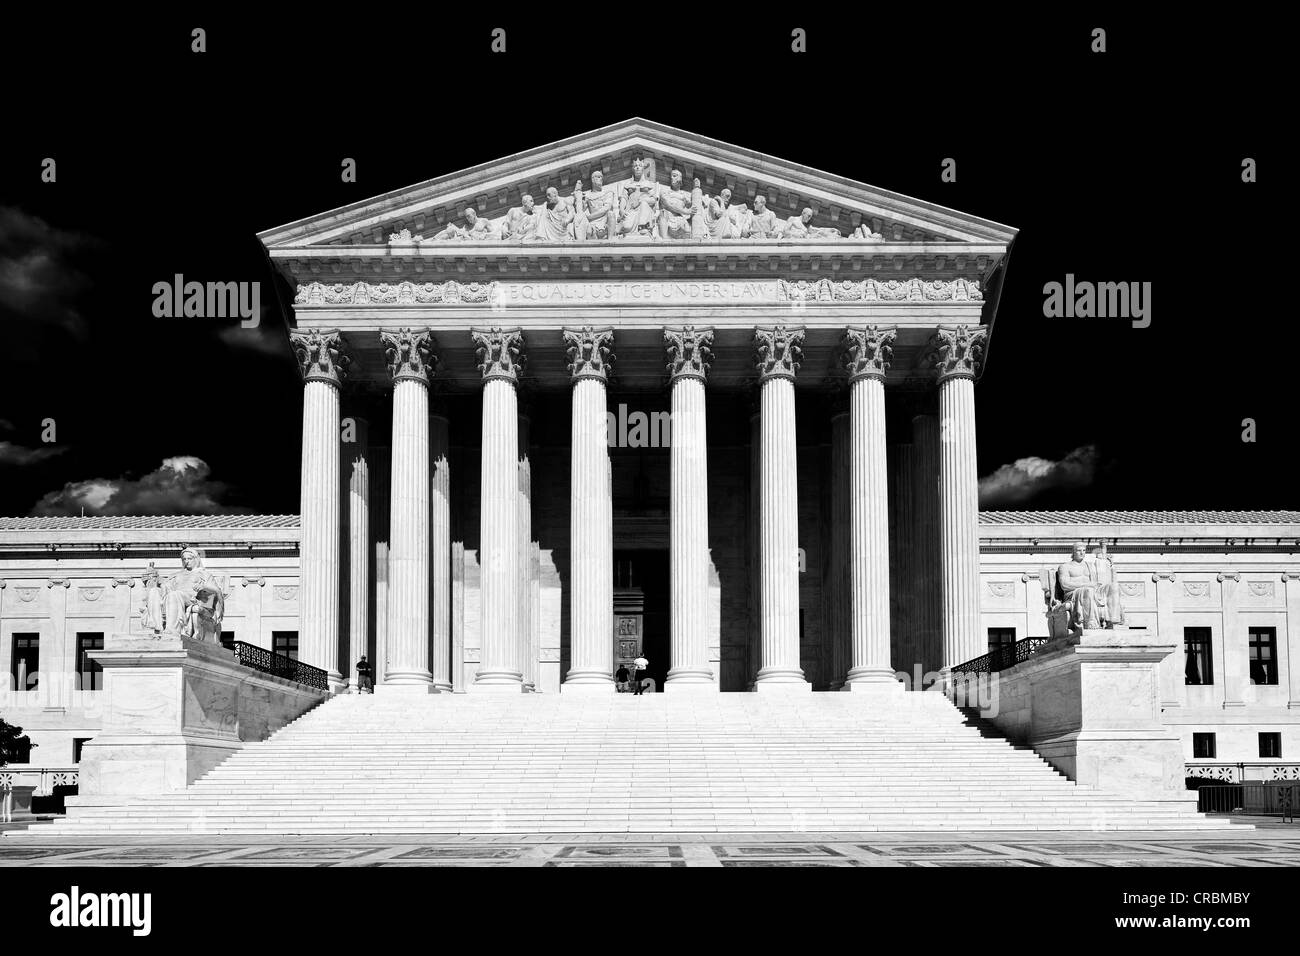 Image en noir et blanc, la Cour suprême des États-Unis, Capitol Hill, Washington DC, District of Columbia, United States of America Banque D'Images